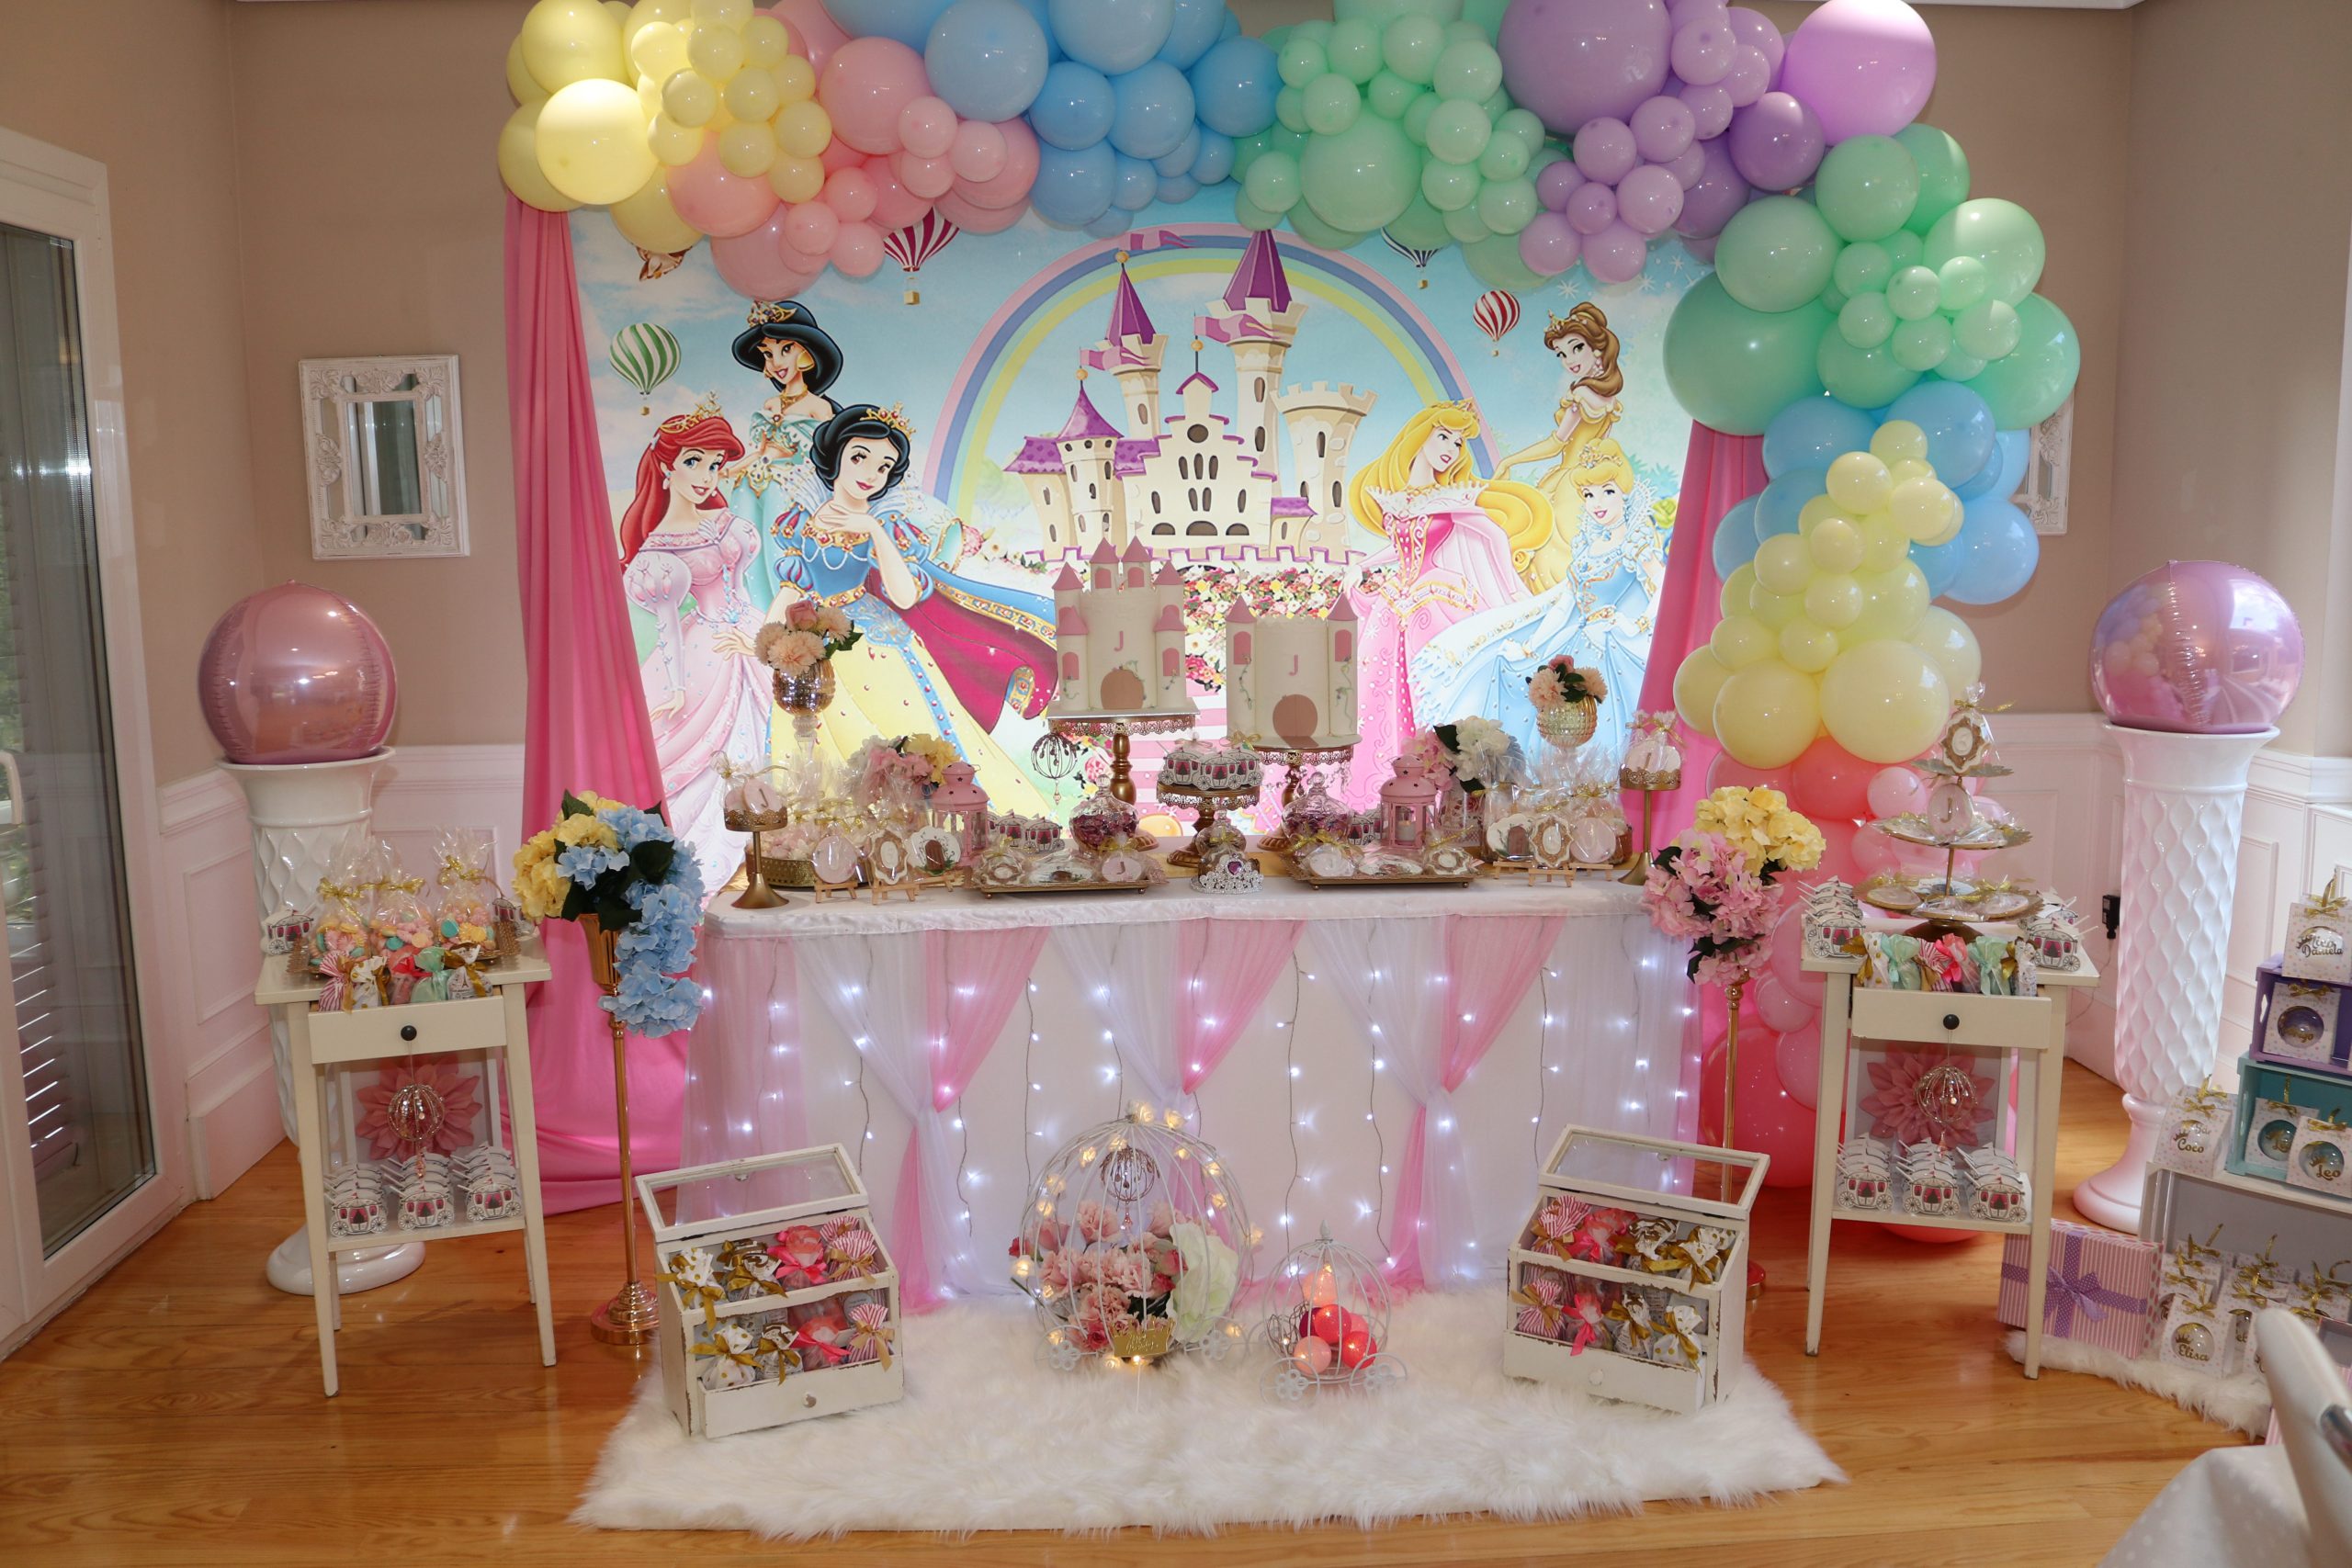 Venta anticipada preparar pastel Un cumpleaños de princesas: original, diferente… ¡y por partida doble!